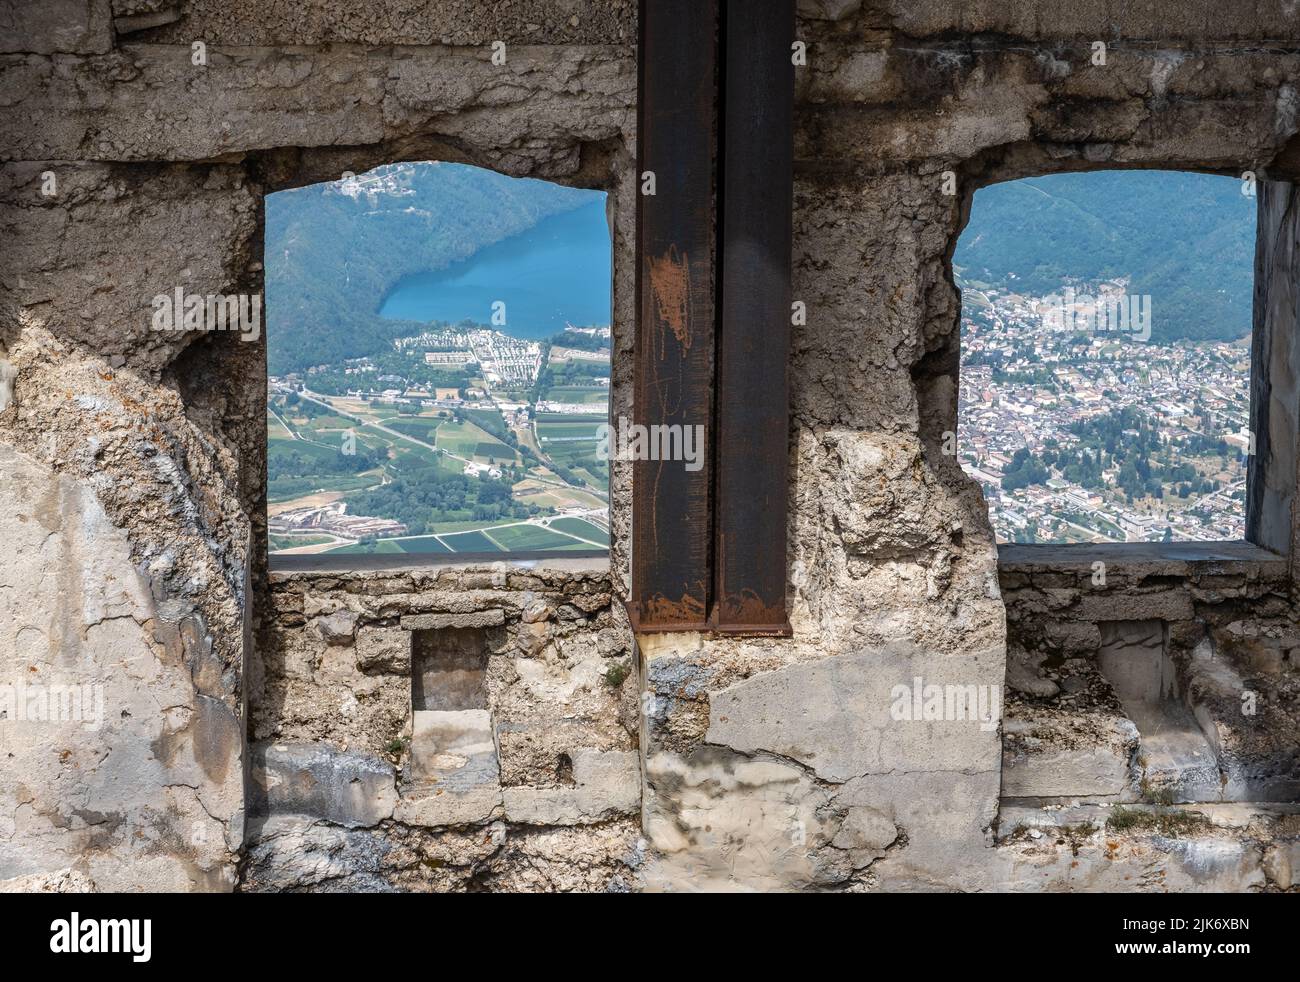 Forte Spitz Verle: La fortificazione austriaca della prima guerra mondiale situata sulla sommità del Pizzo di Levico Terme, Trentino Alto Adige, Italia Foto Stock